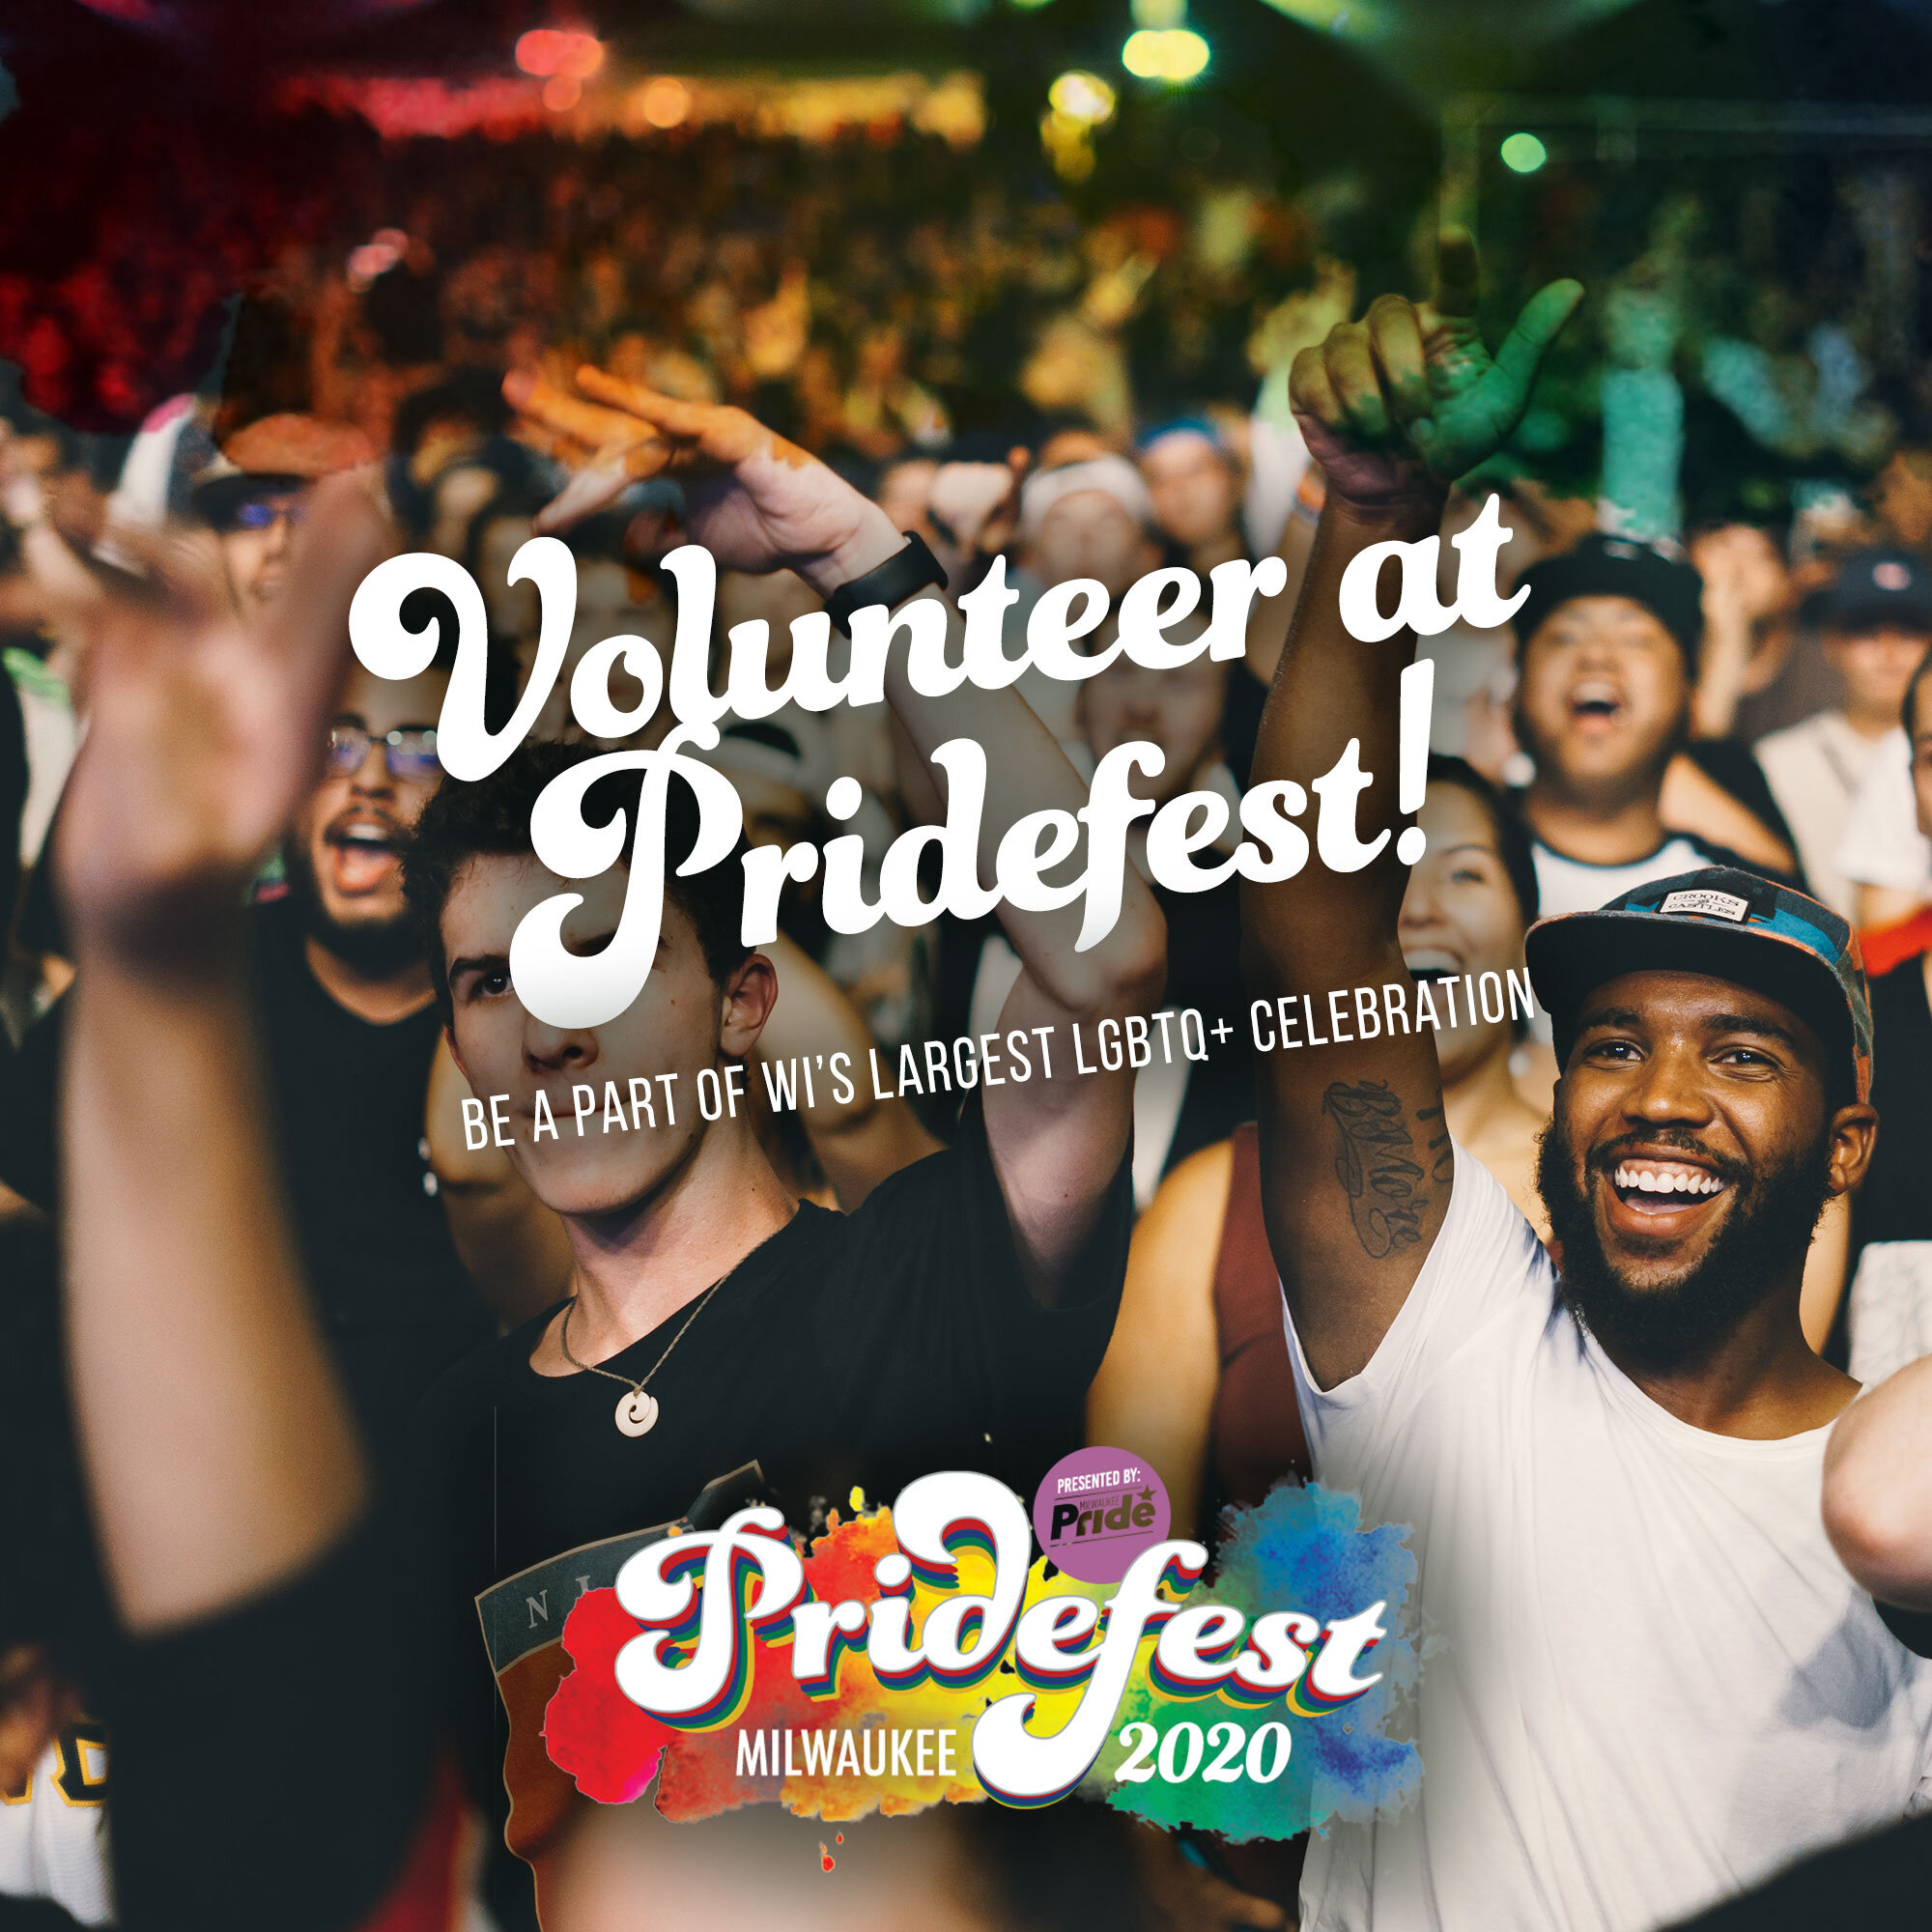 Pridefest-MKE-Volunteer-at-Pridefest-2.jpg